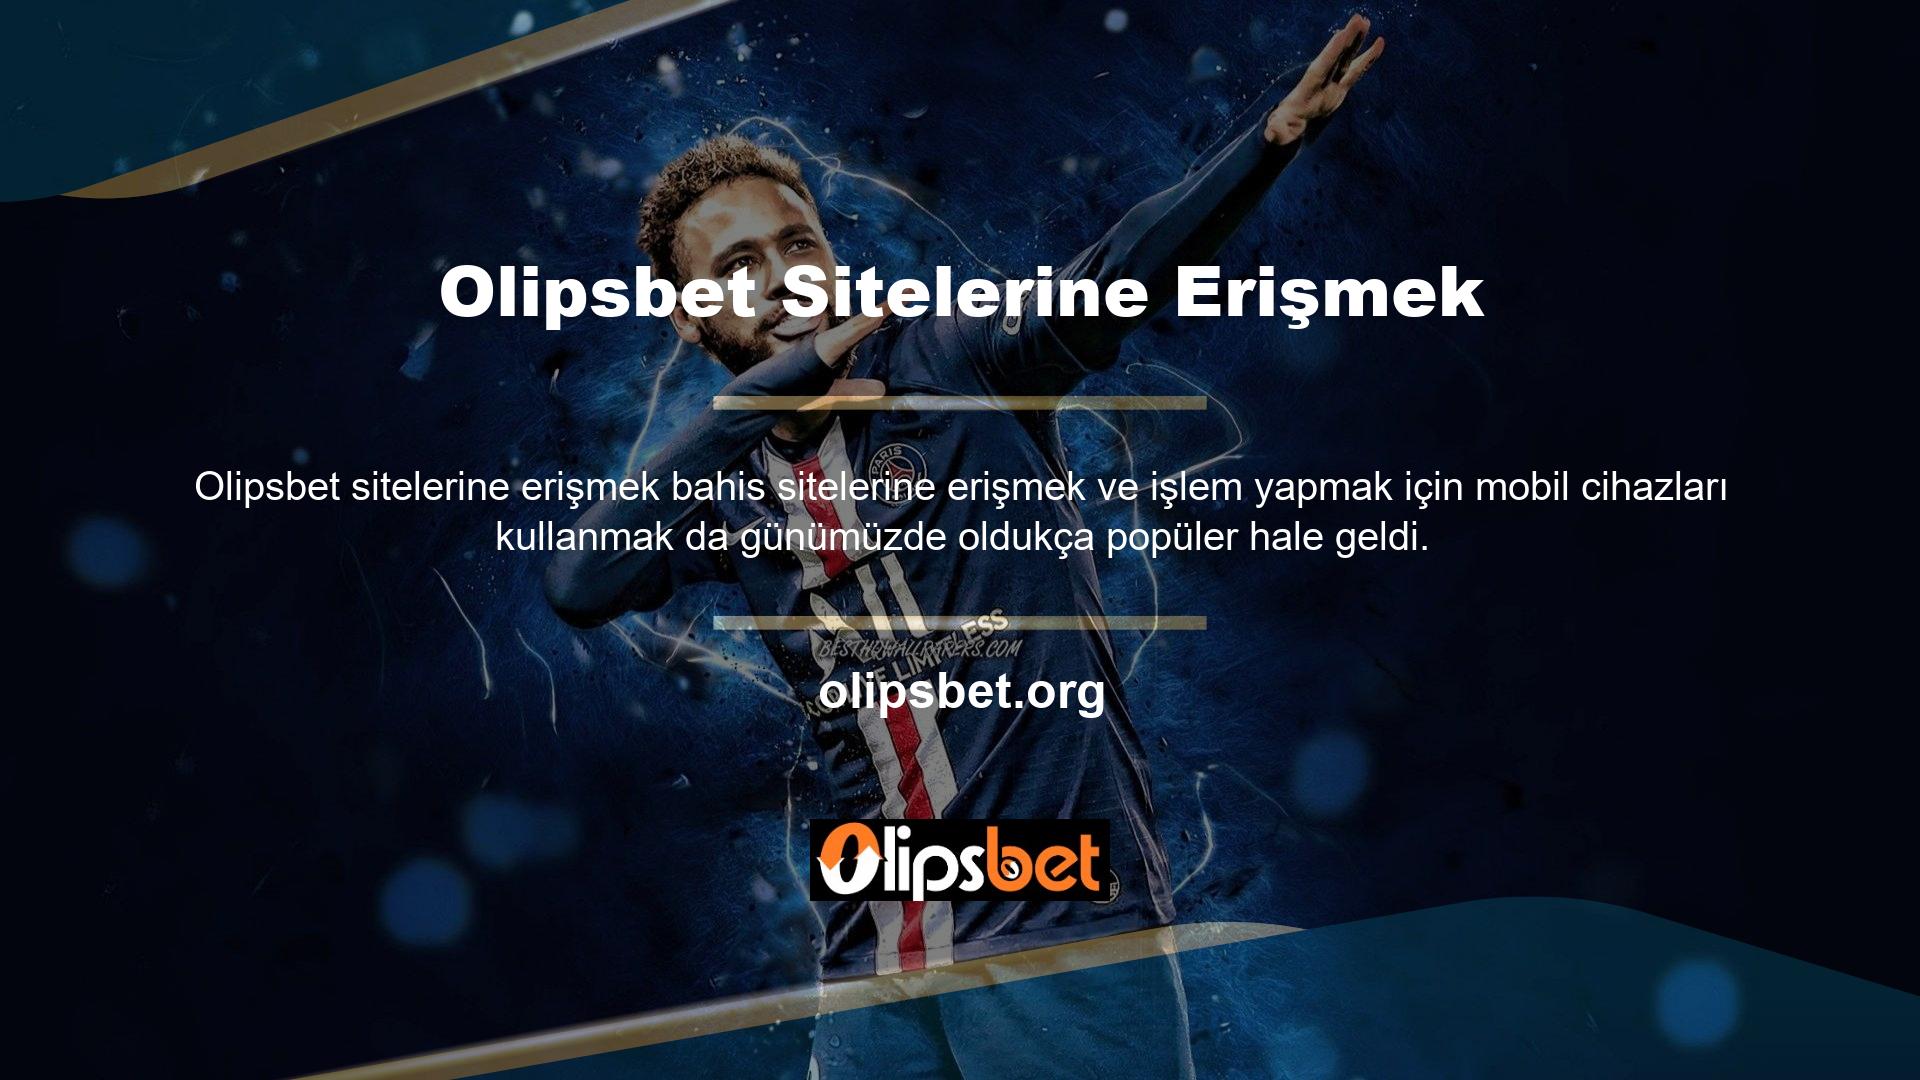 Olipsbet sitesine üye olanların çoğu bu şekilde sitenin hizmetlerinden aktif olarak faydalanmaktadır